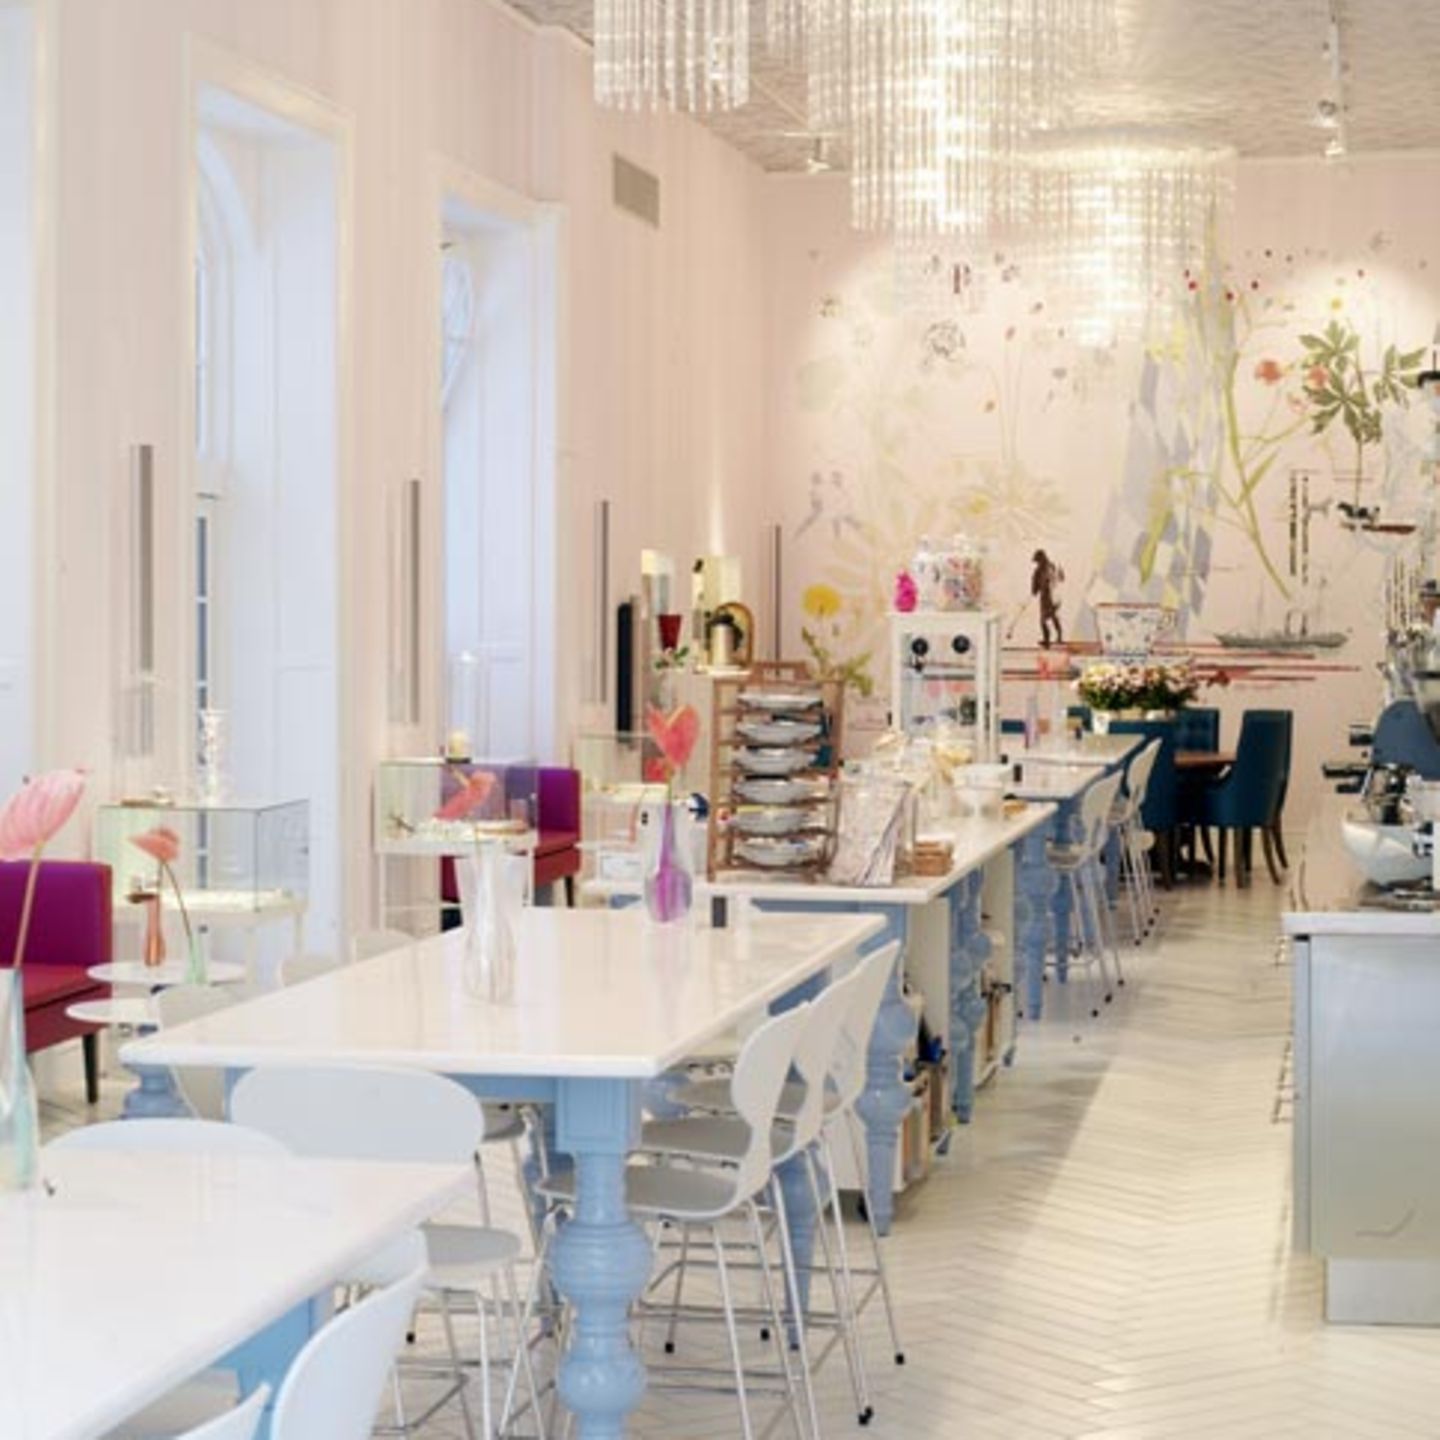 Essen & shoppen: The Royal Cafe